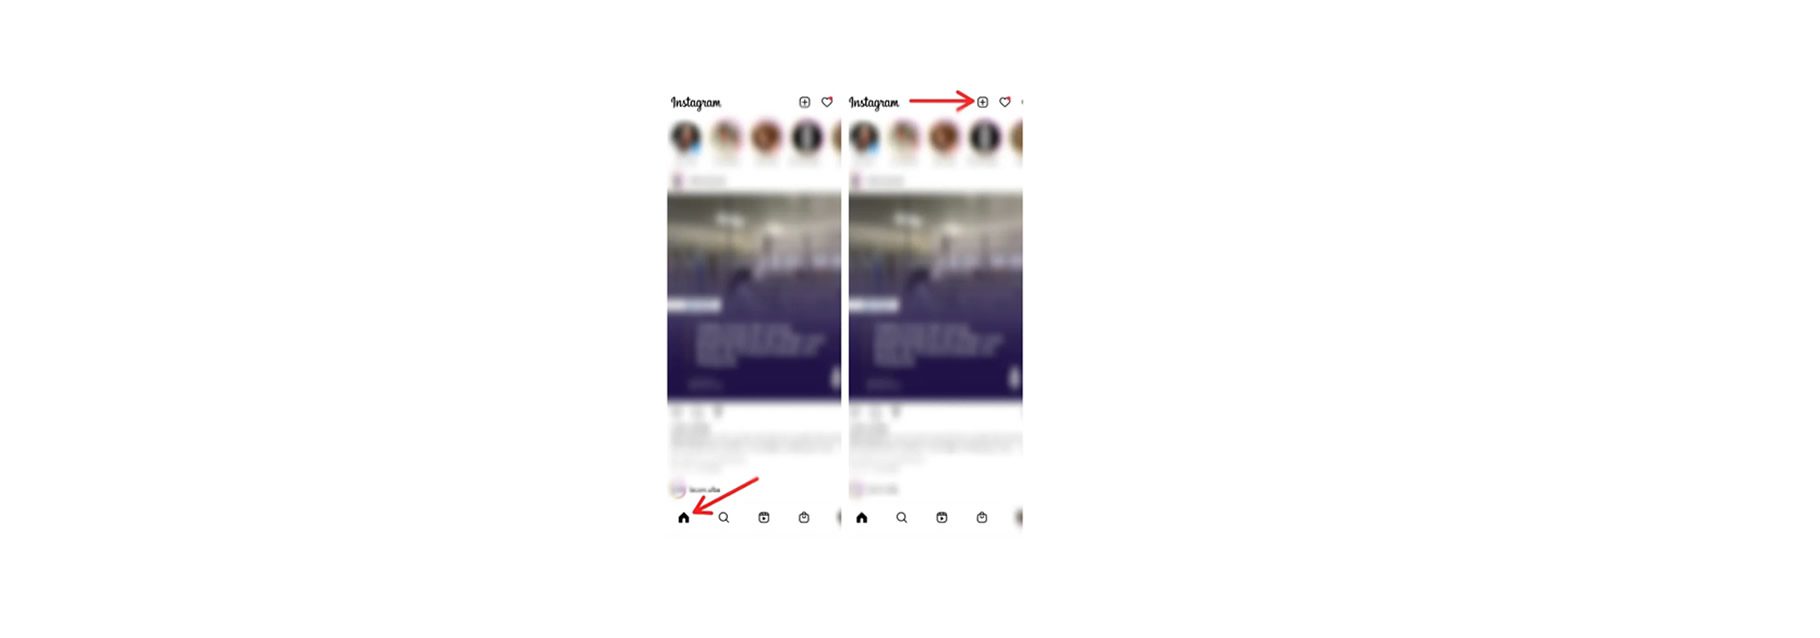 localização instagram mudar cor